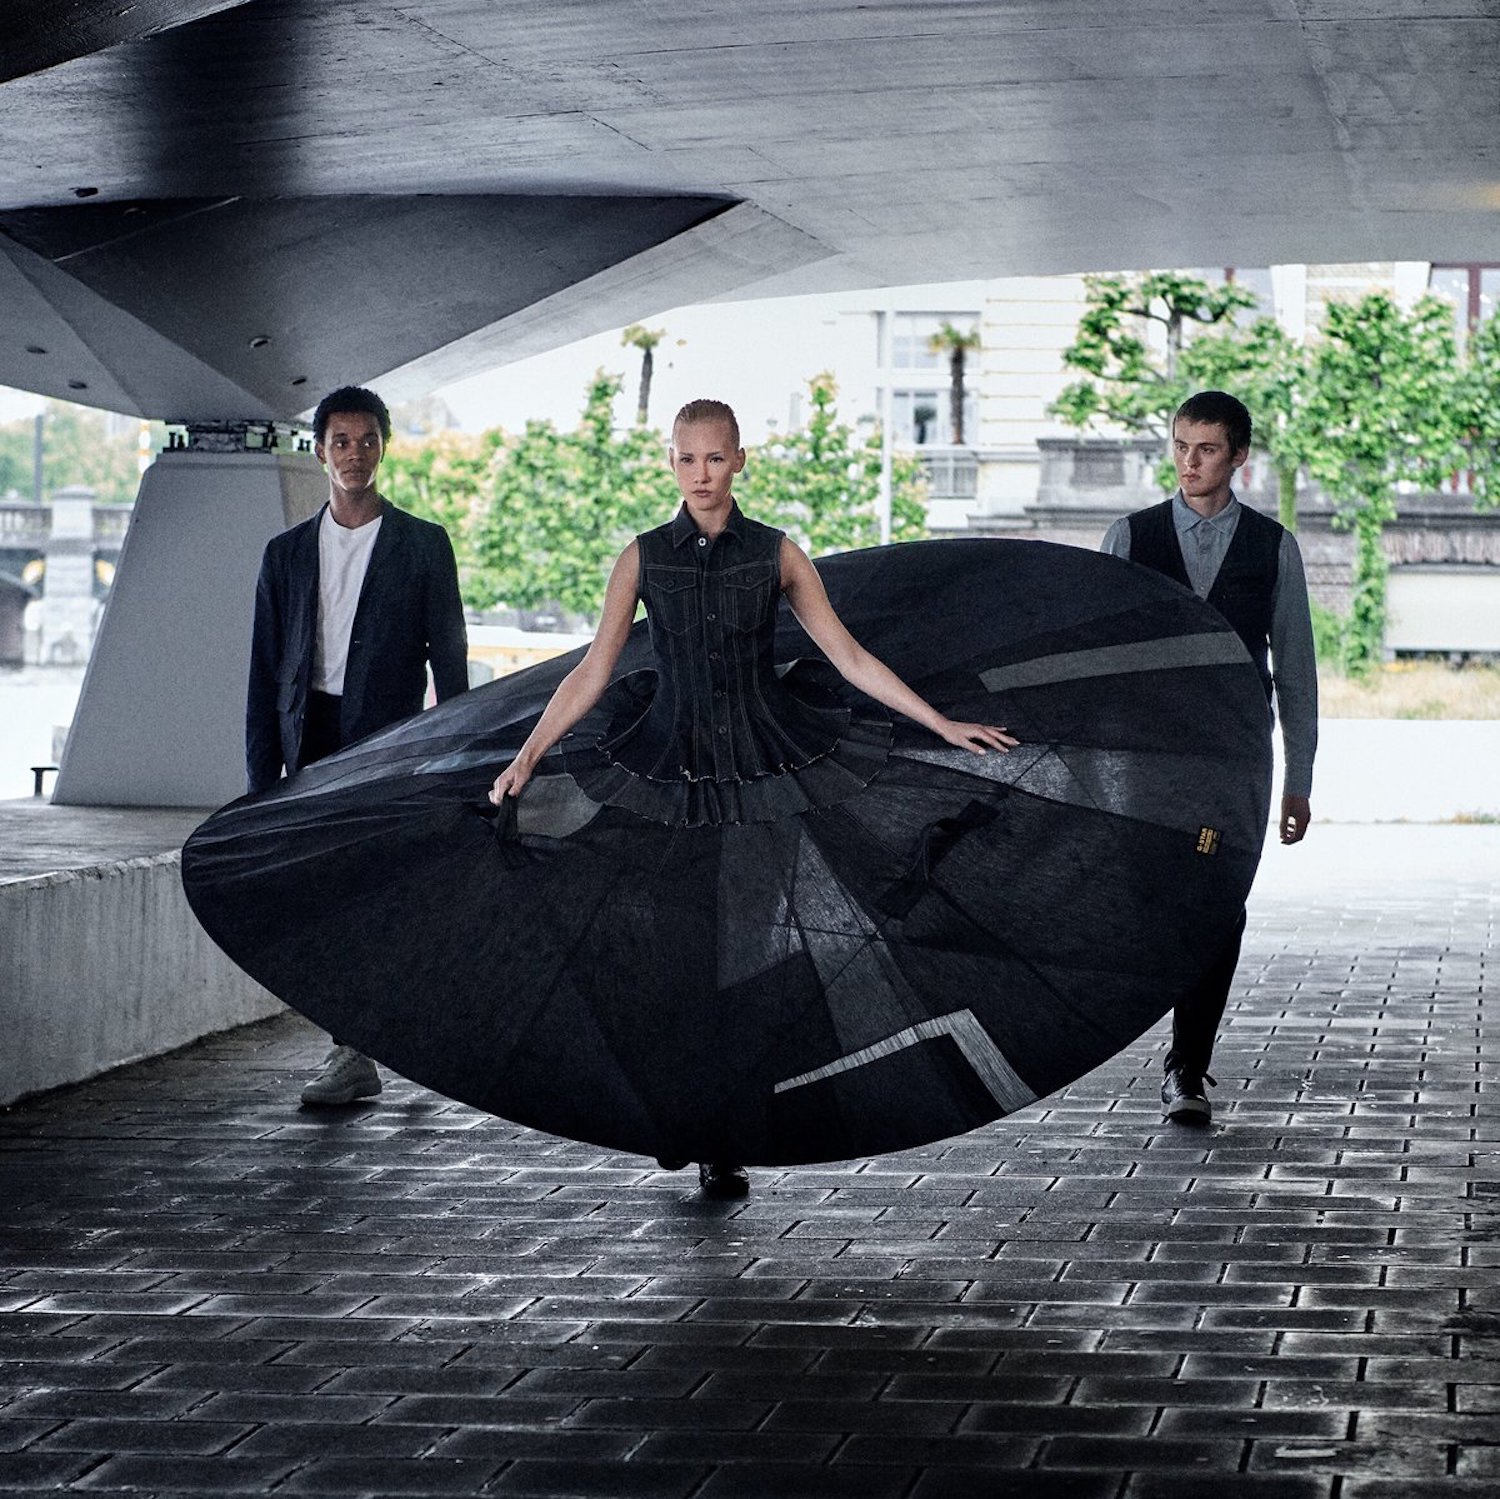 Le ballet d'Amsterdam crée le tutu de la distance sociale